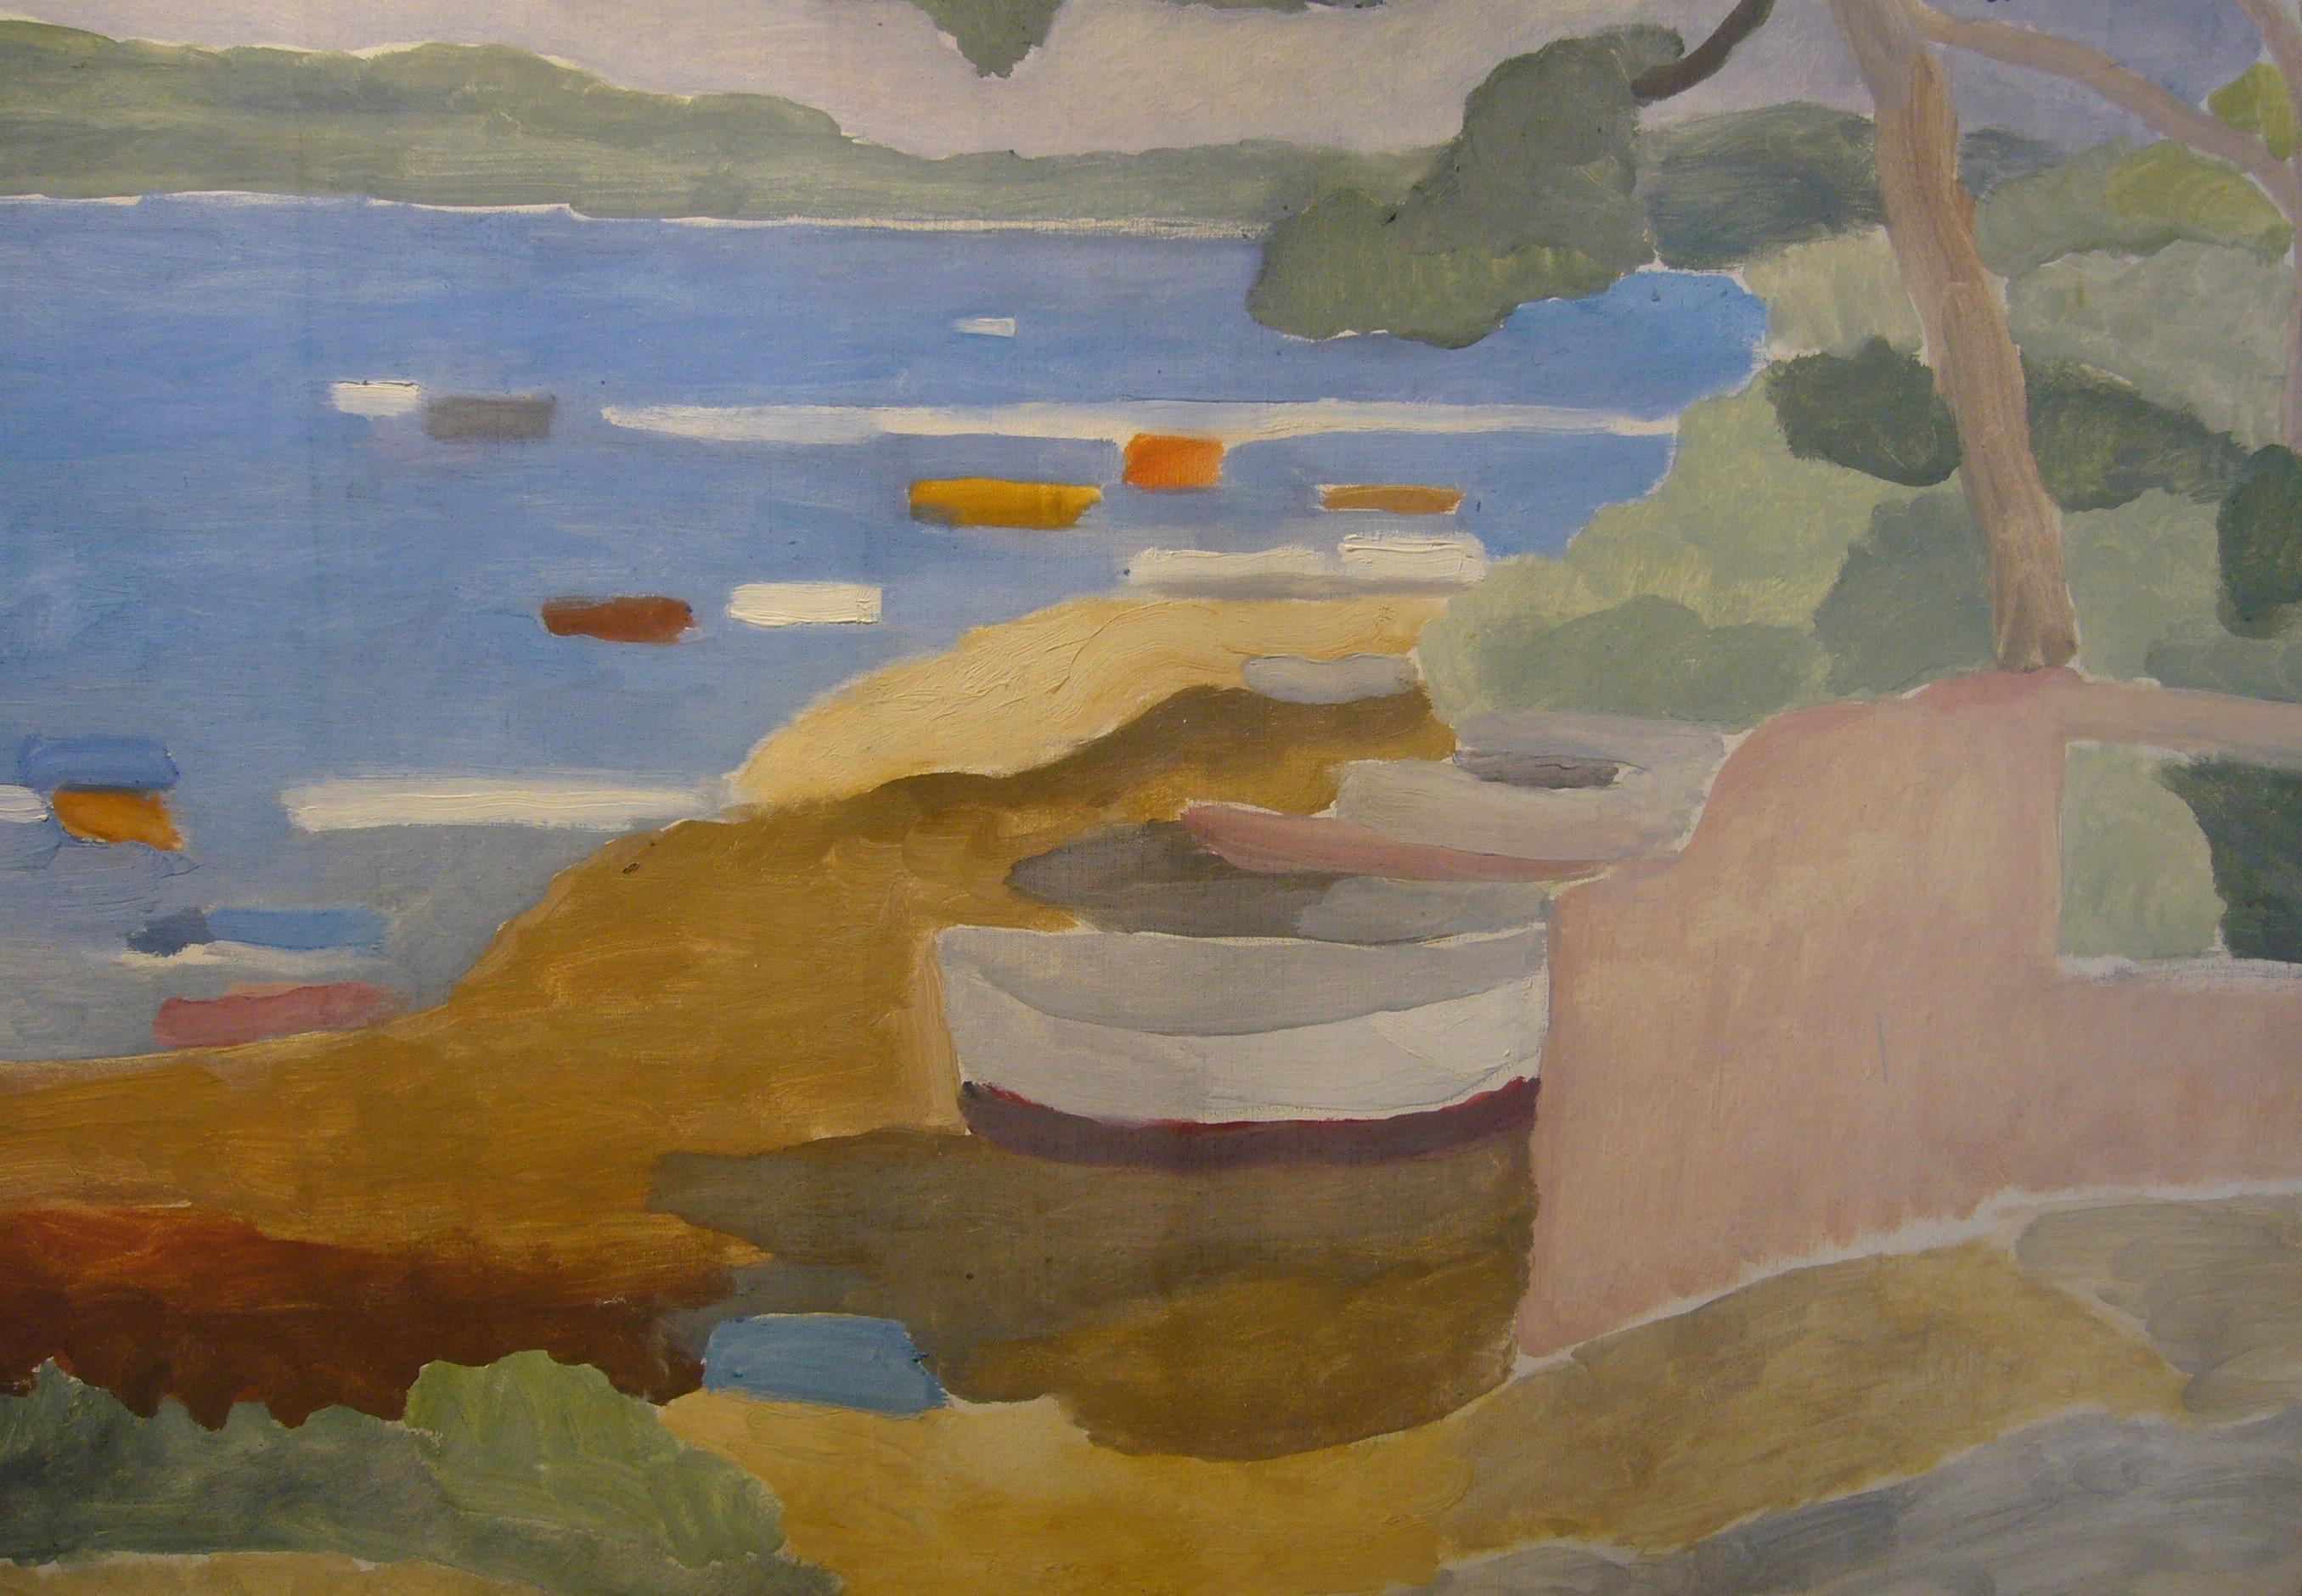 Paysage de la méditerranée 2 - Huile sur toile, 65x81 cm. - Gray Landscape Painting by Theodore Schempp